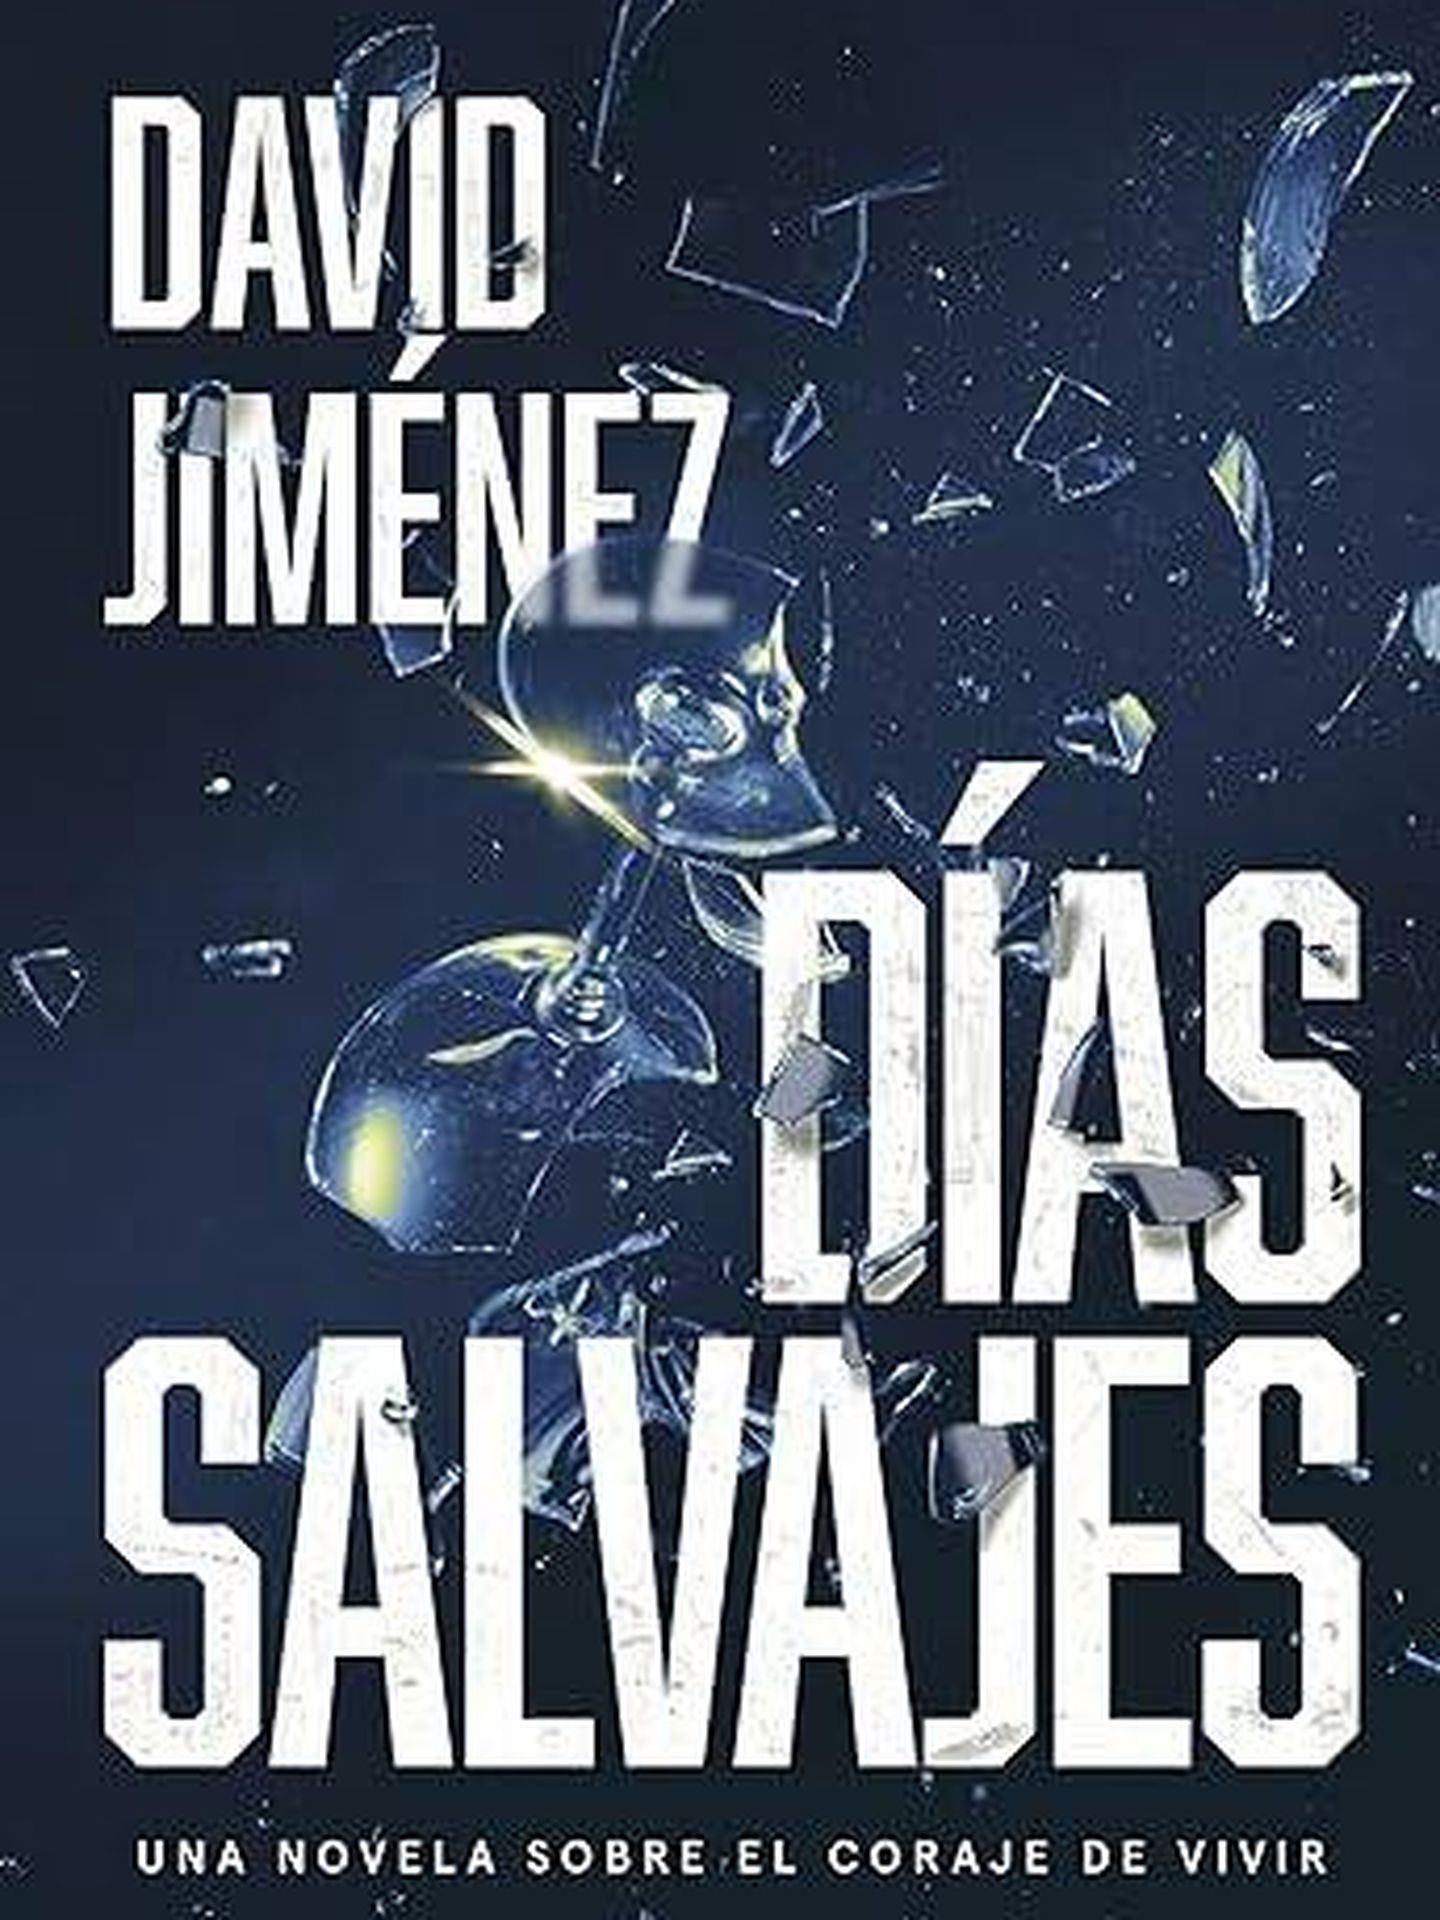 Portada de 'Días Salvajes', la nueva novela de David Jiménez.